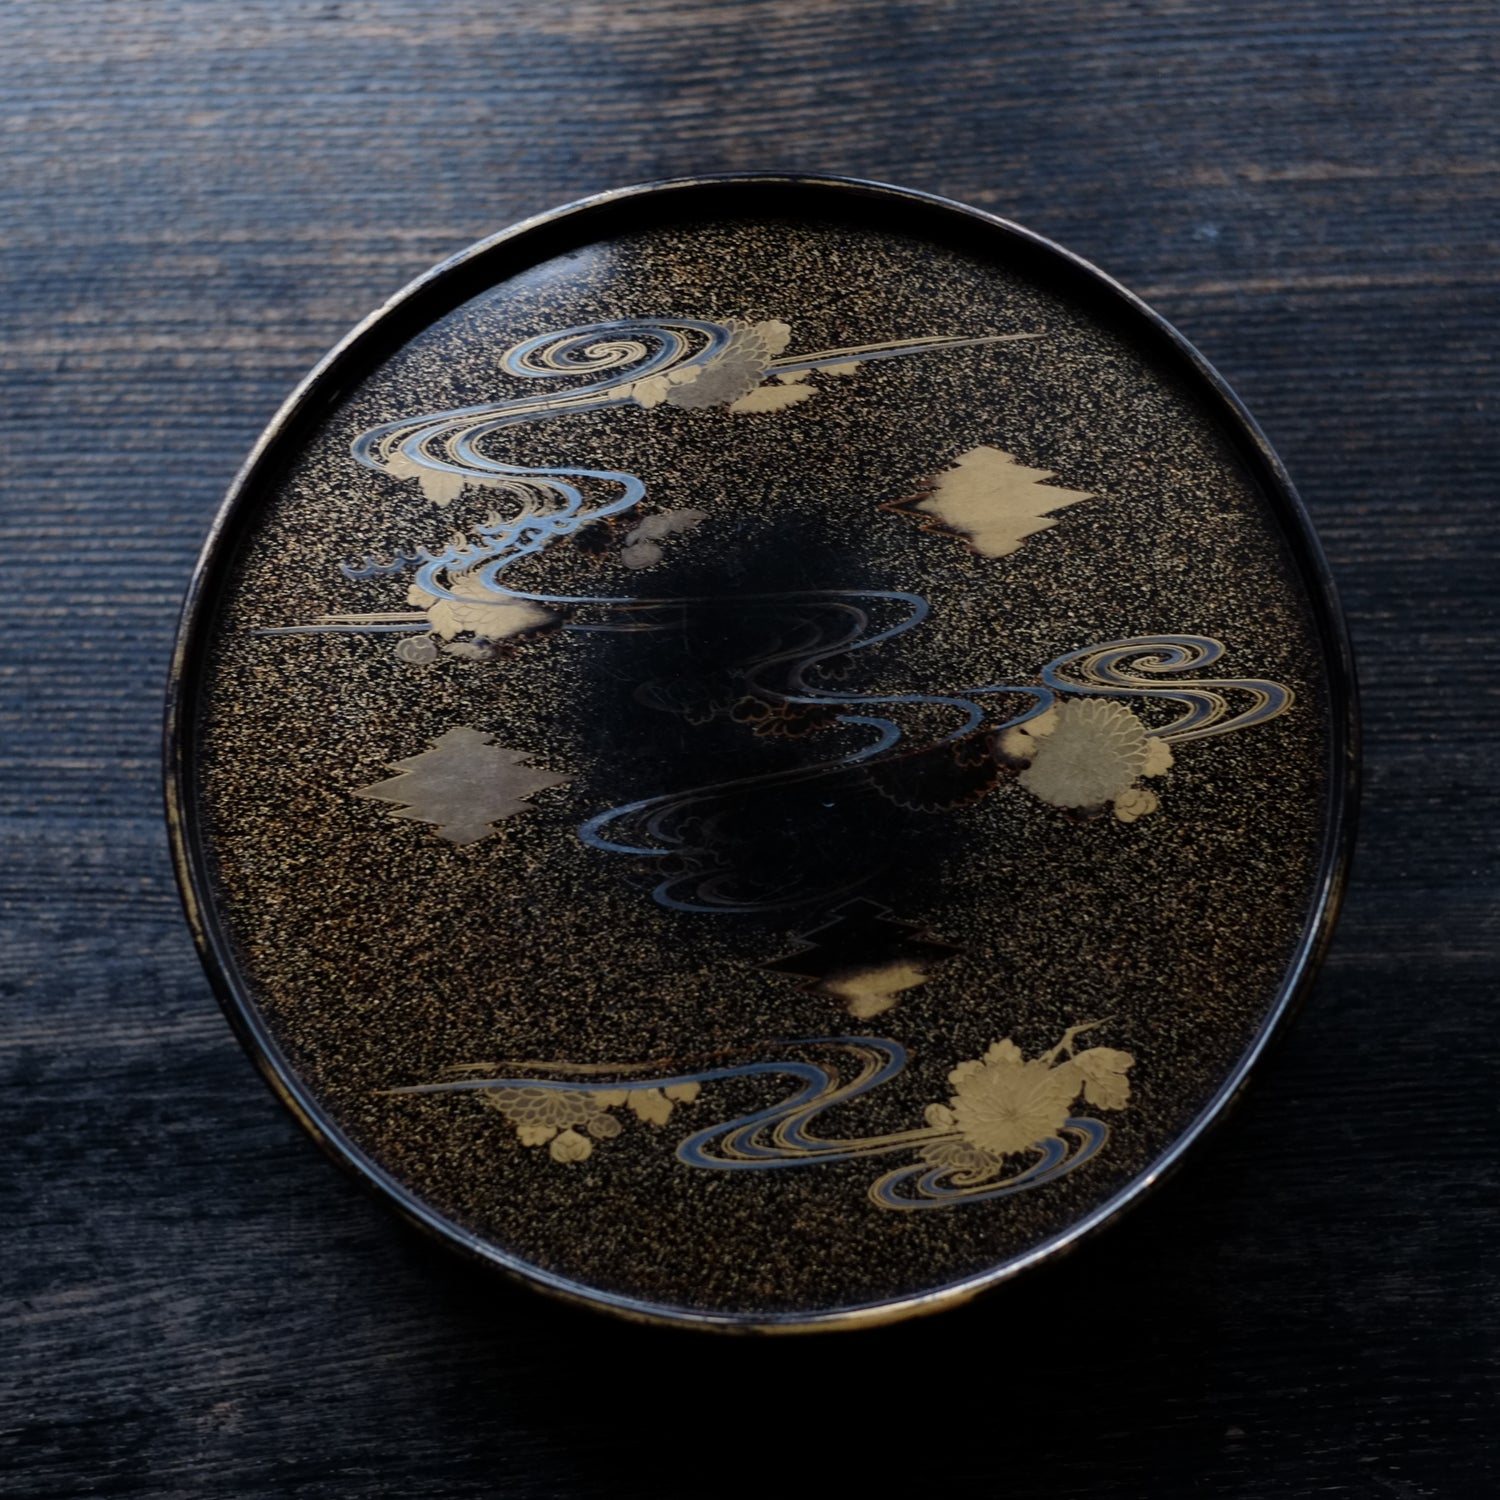 時代 梨地流水蒔絵丸香盆(19世紀) – 逢季荘